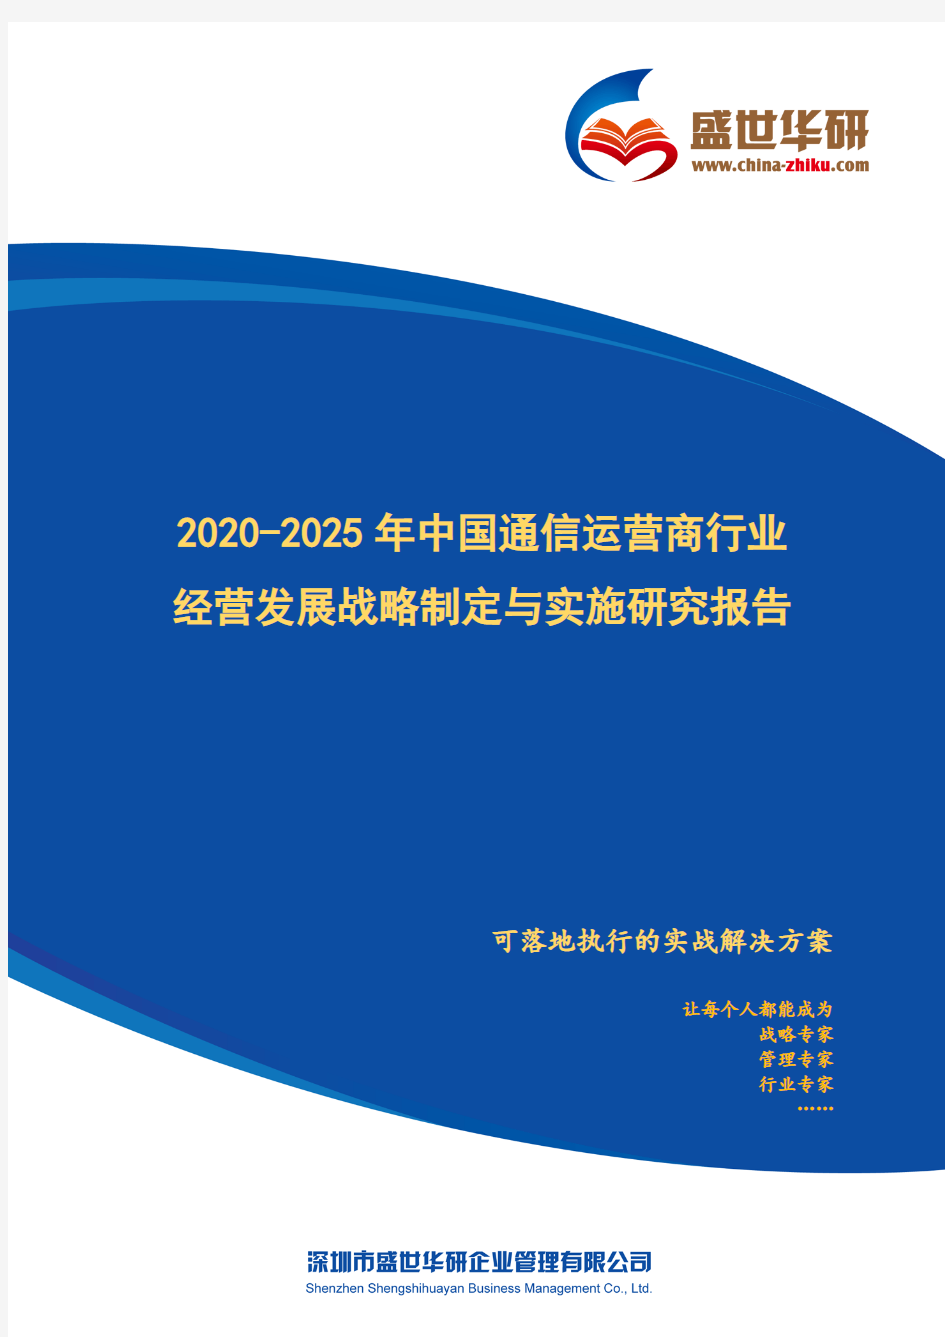 【完整版】2020-2025年中国通信运营商行业经营发展战略及规划制定与实施研究报告